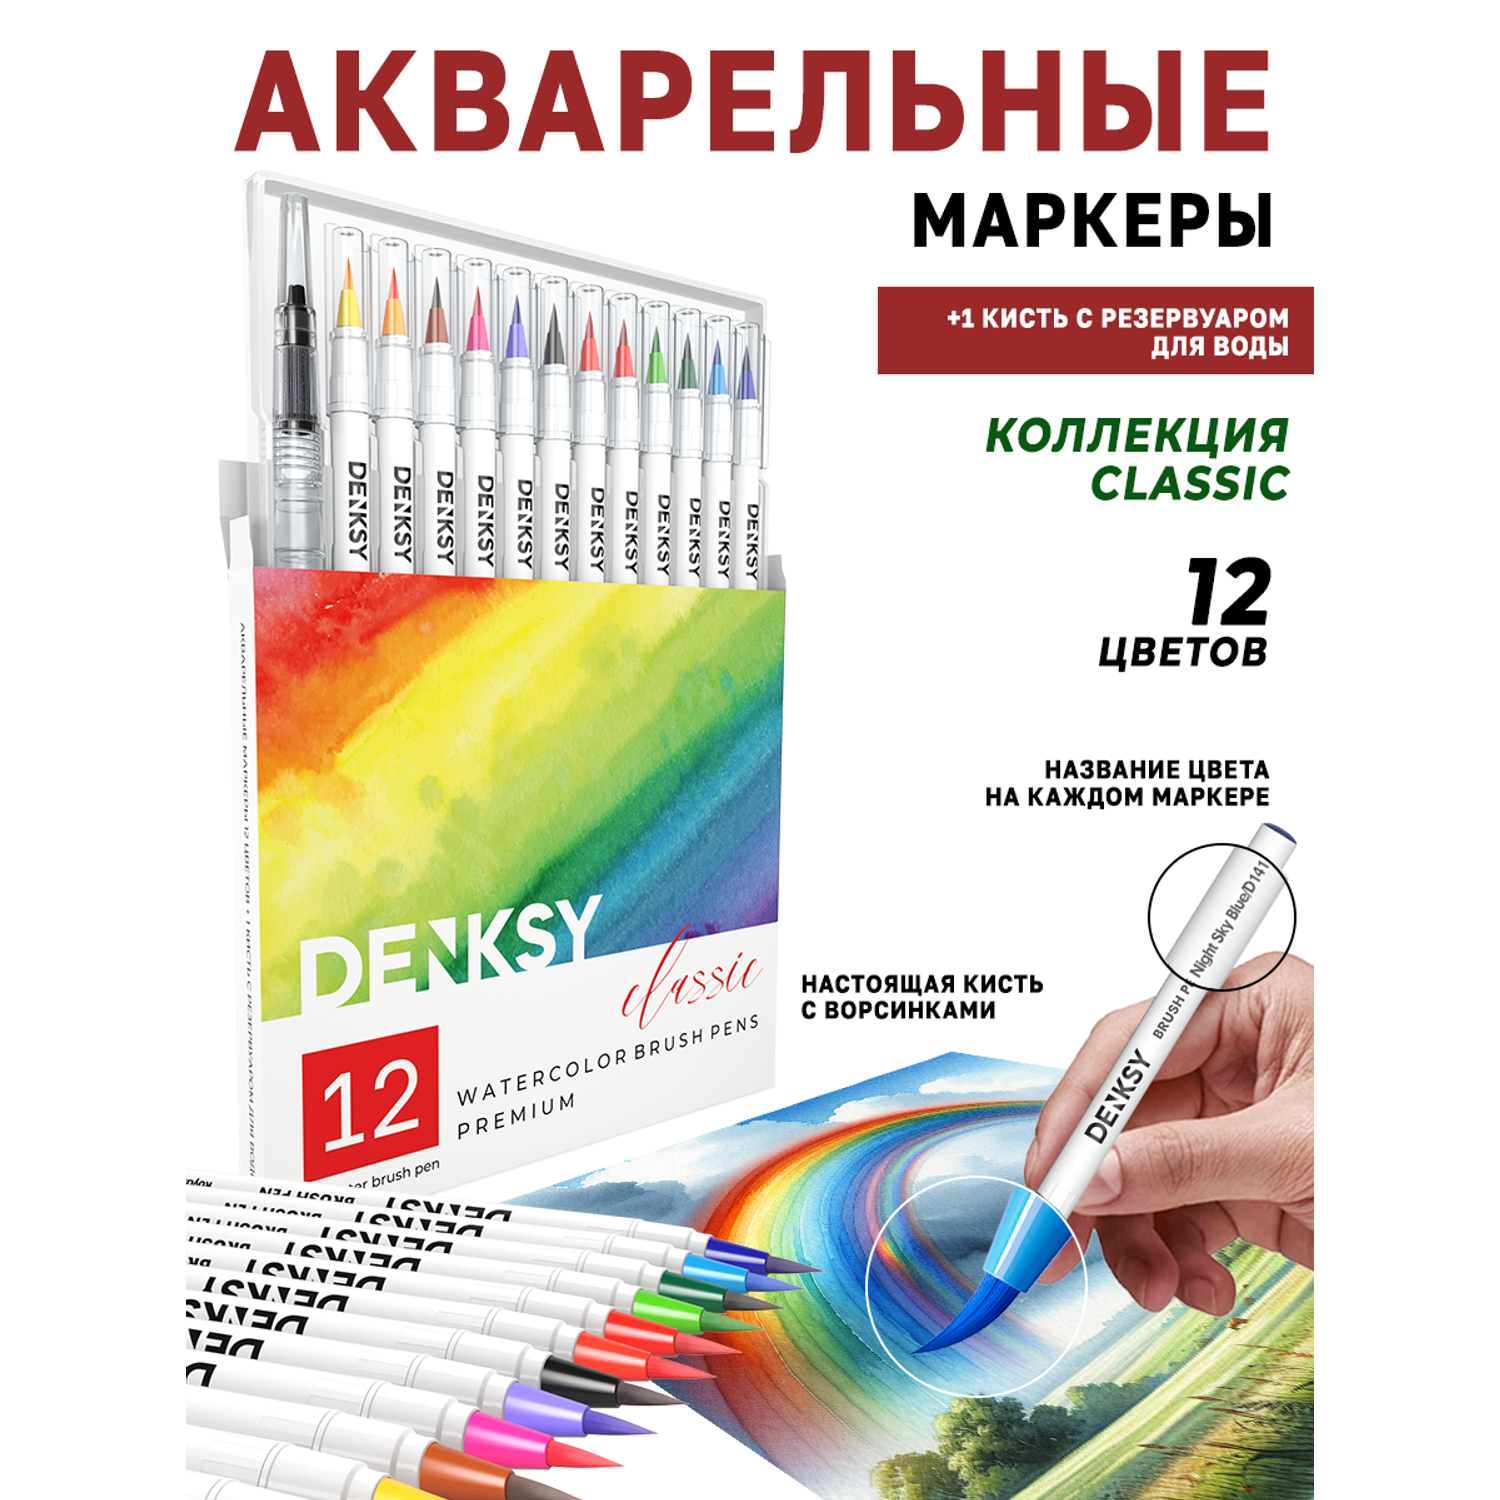 Акварельные маркеры DENKSY 12 Classic цветов в белом корпусе и 1 кисть с резервуаром - фото 1